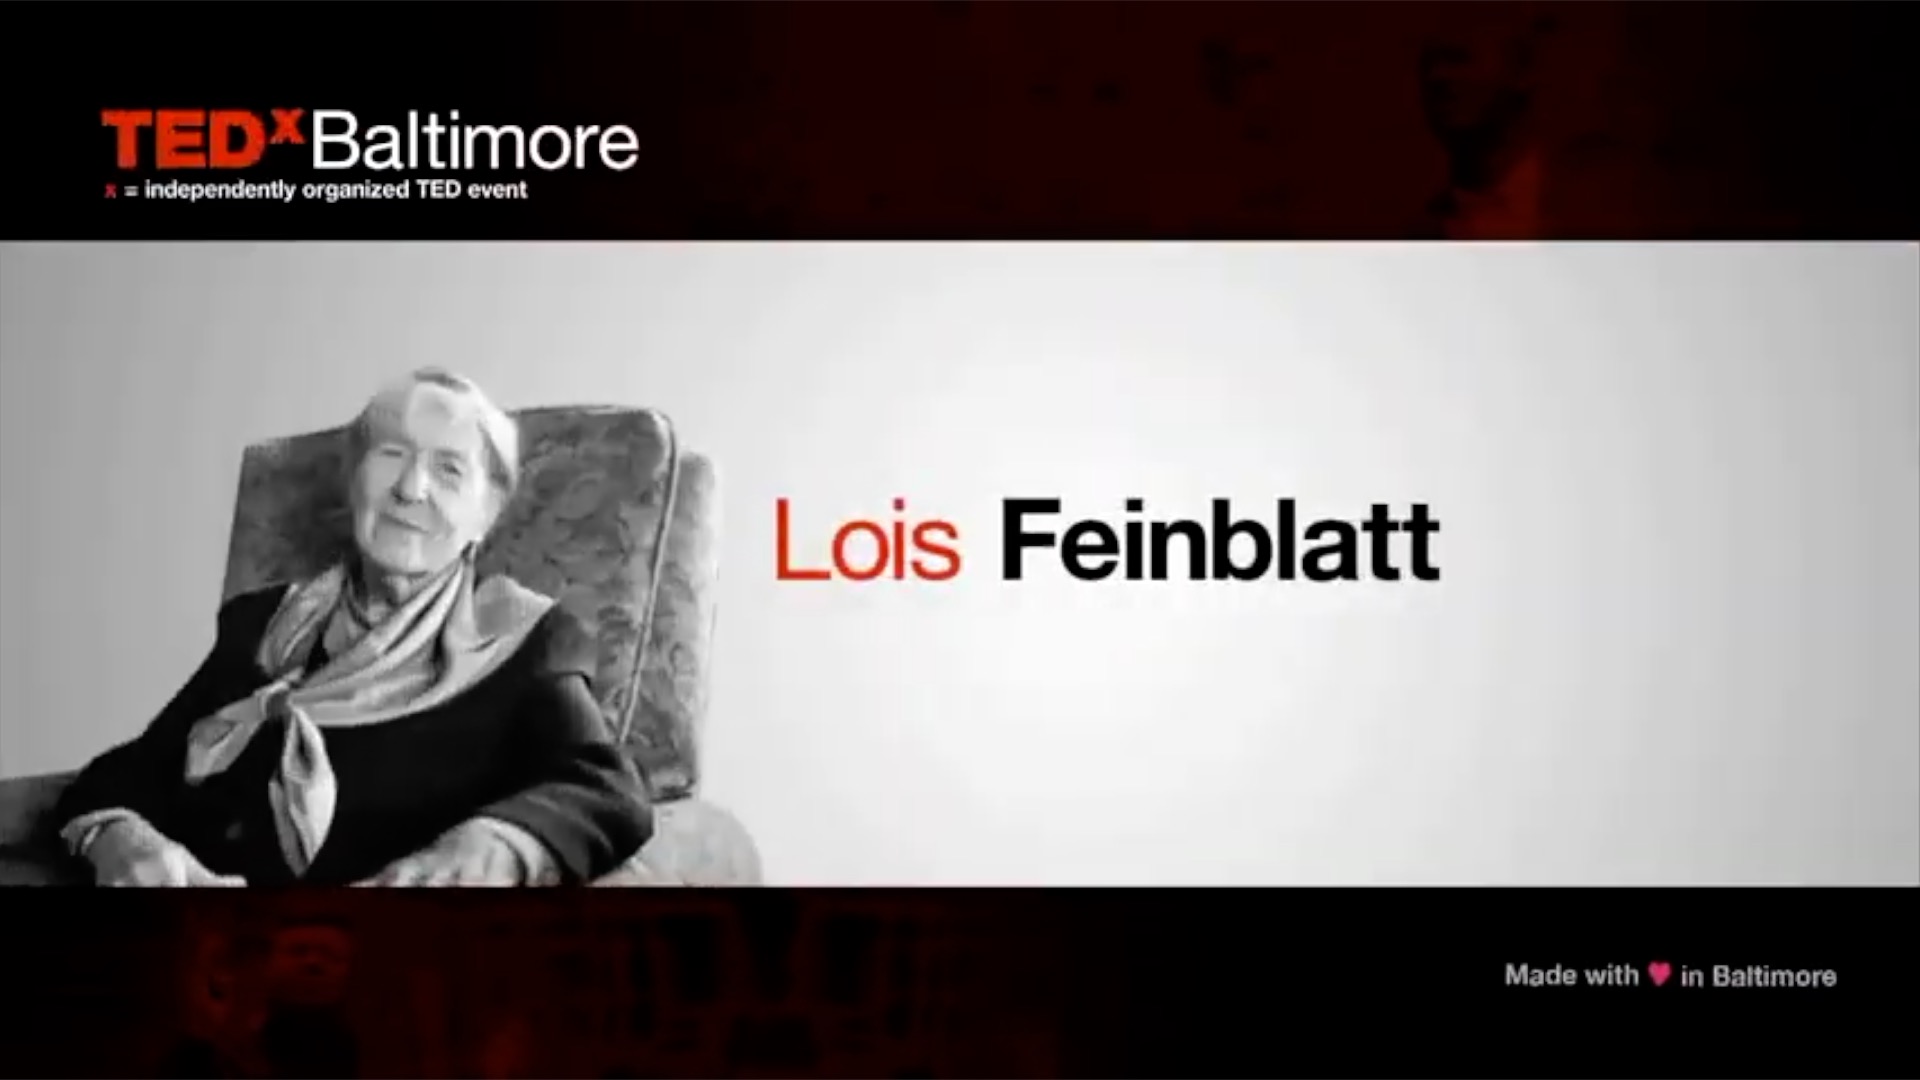 CHOICES WE MAKE
Lois Feinblatt Ted Talk x Baltimore
